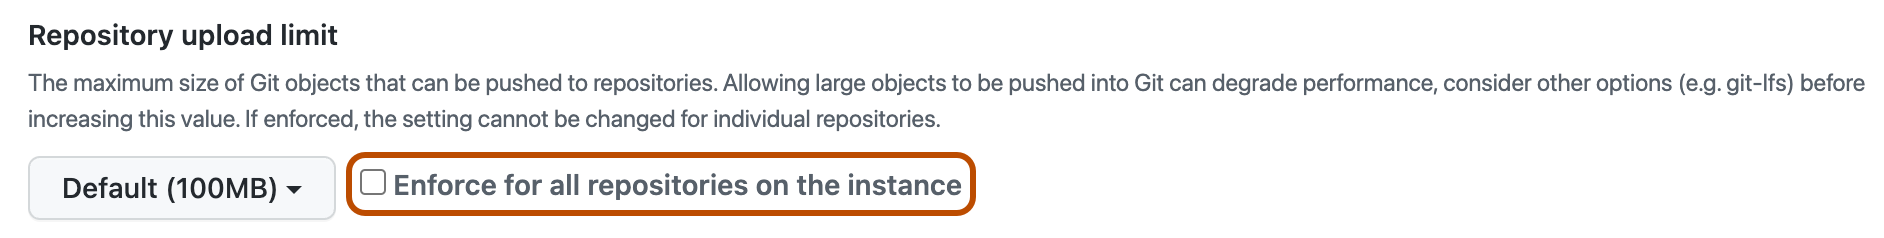 Opción para imponer tamaño máximo de objetos en todos los repositorios